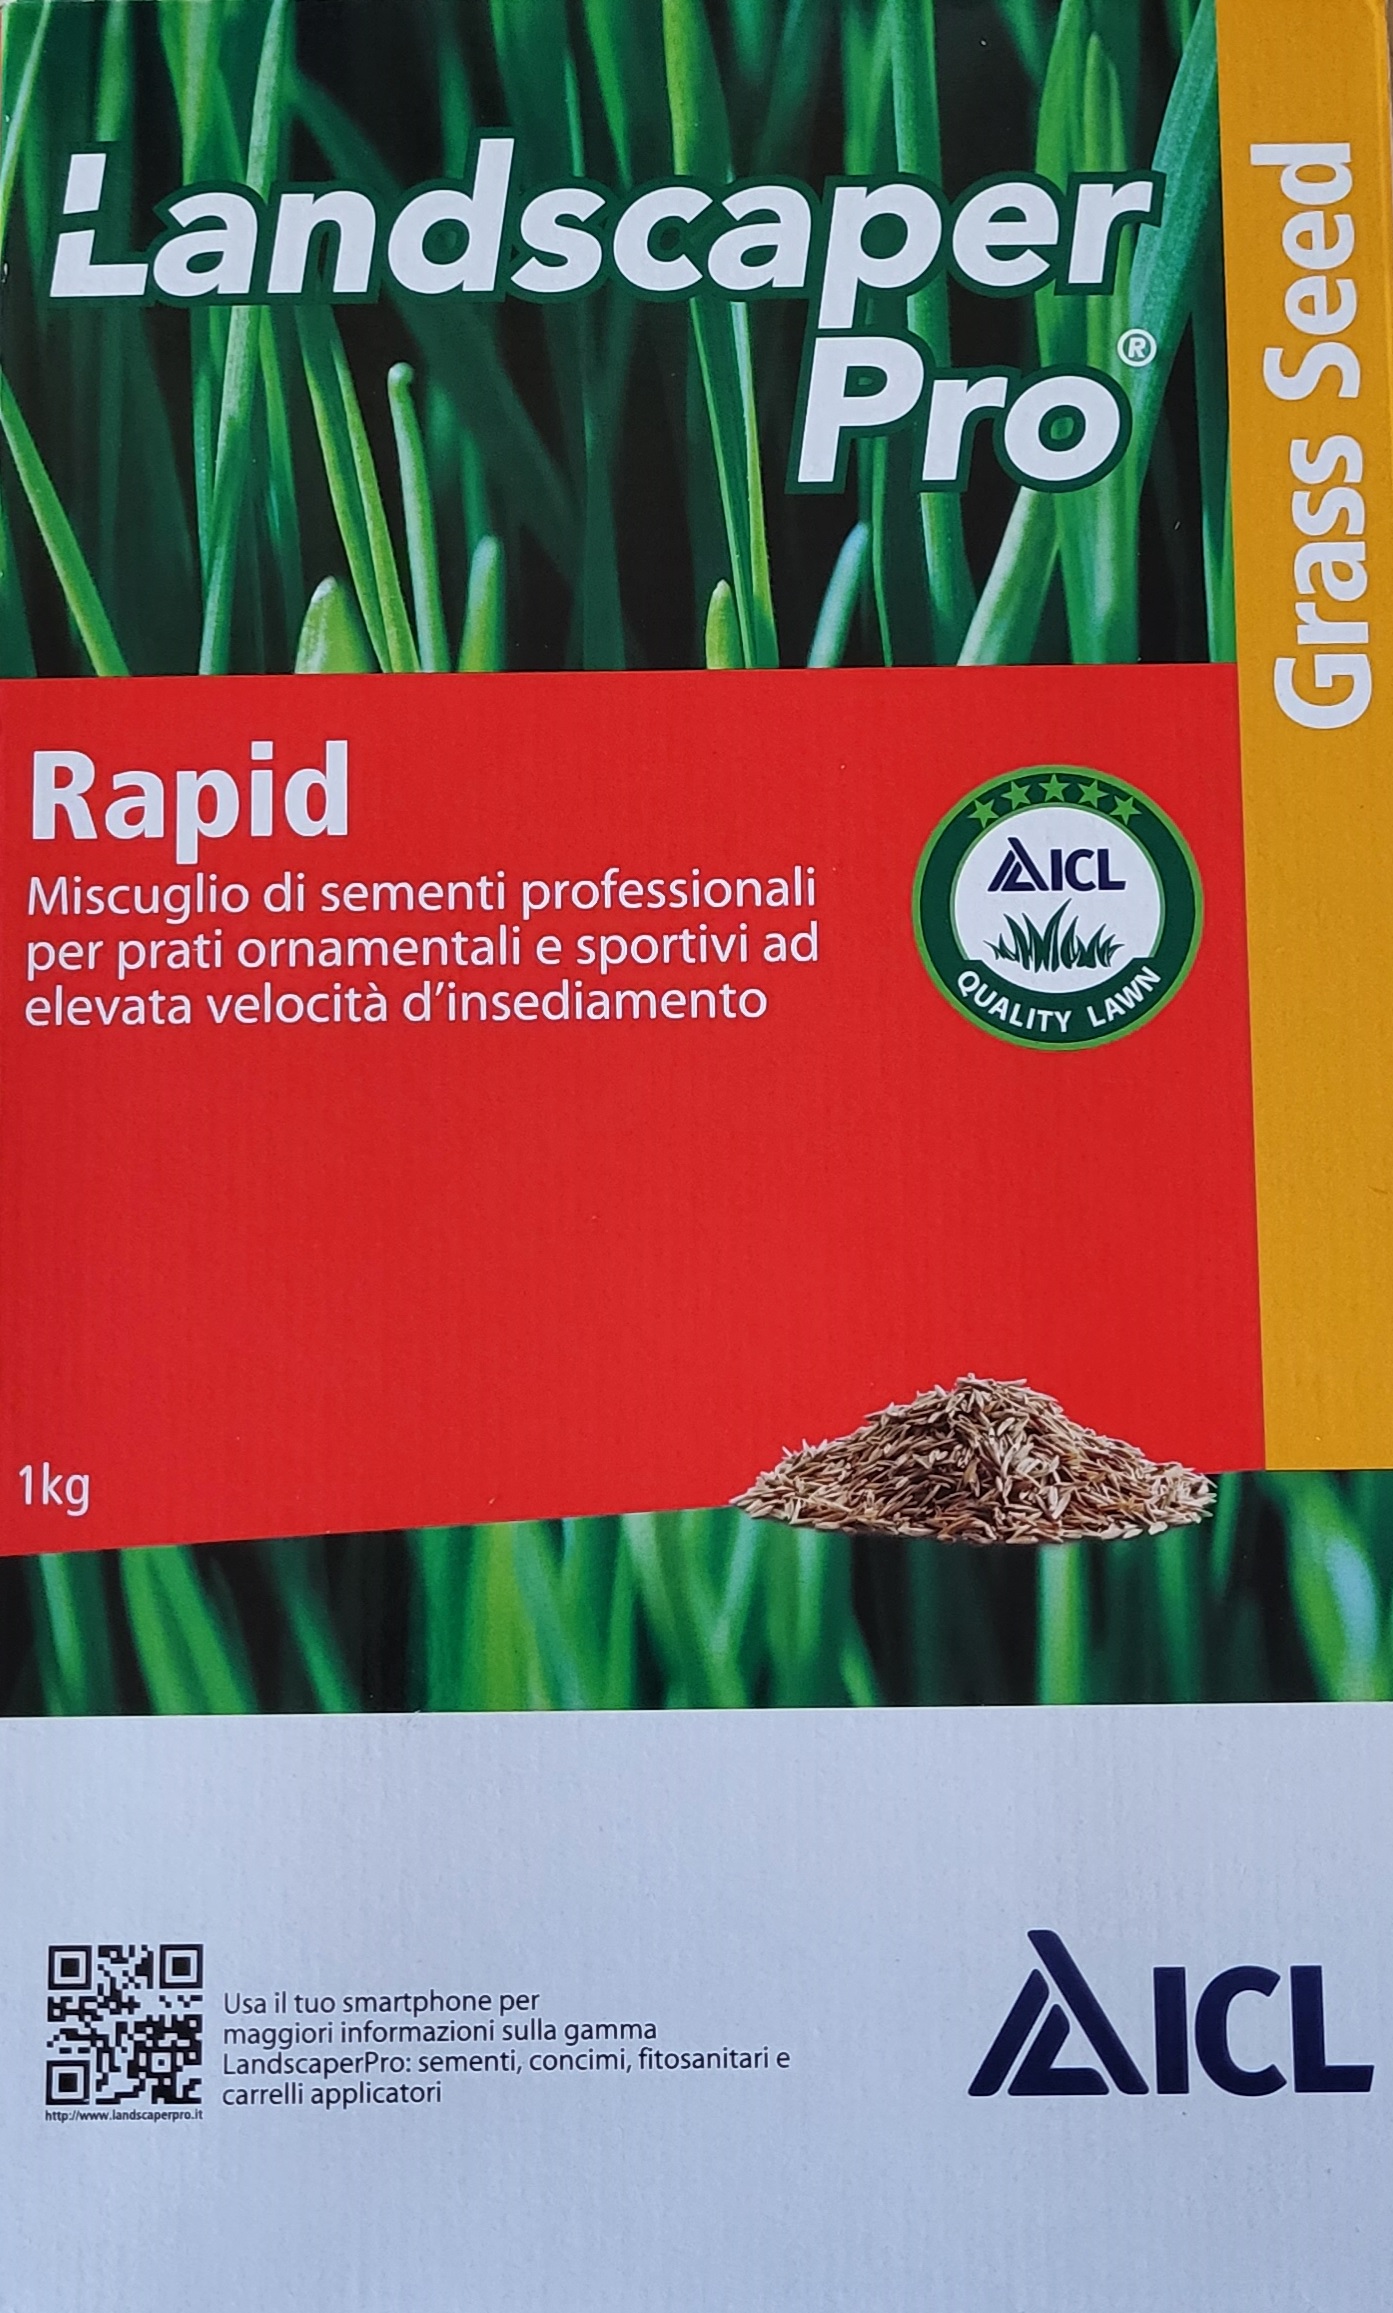 Semințe de iarbă ICL Rapid (pentru întreținerea parcurilor) 1 kg